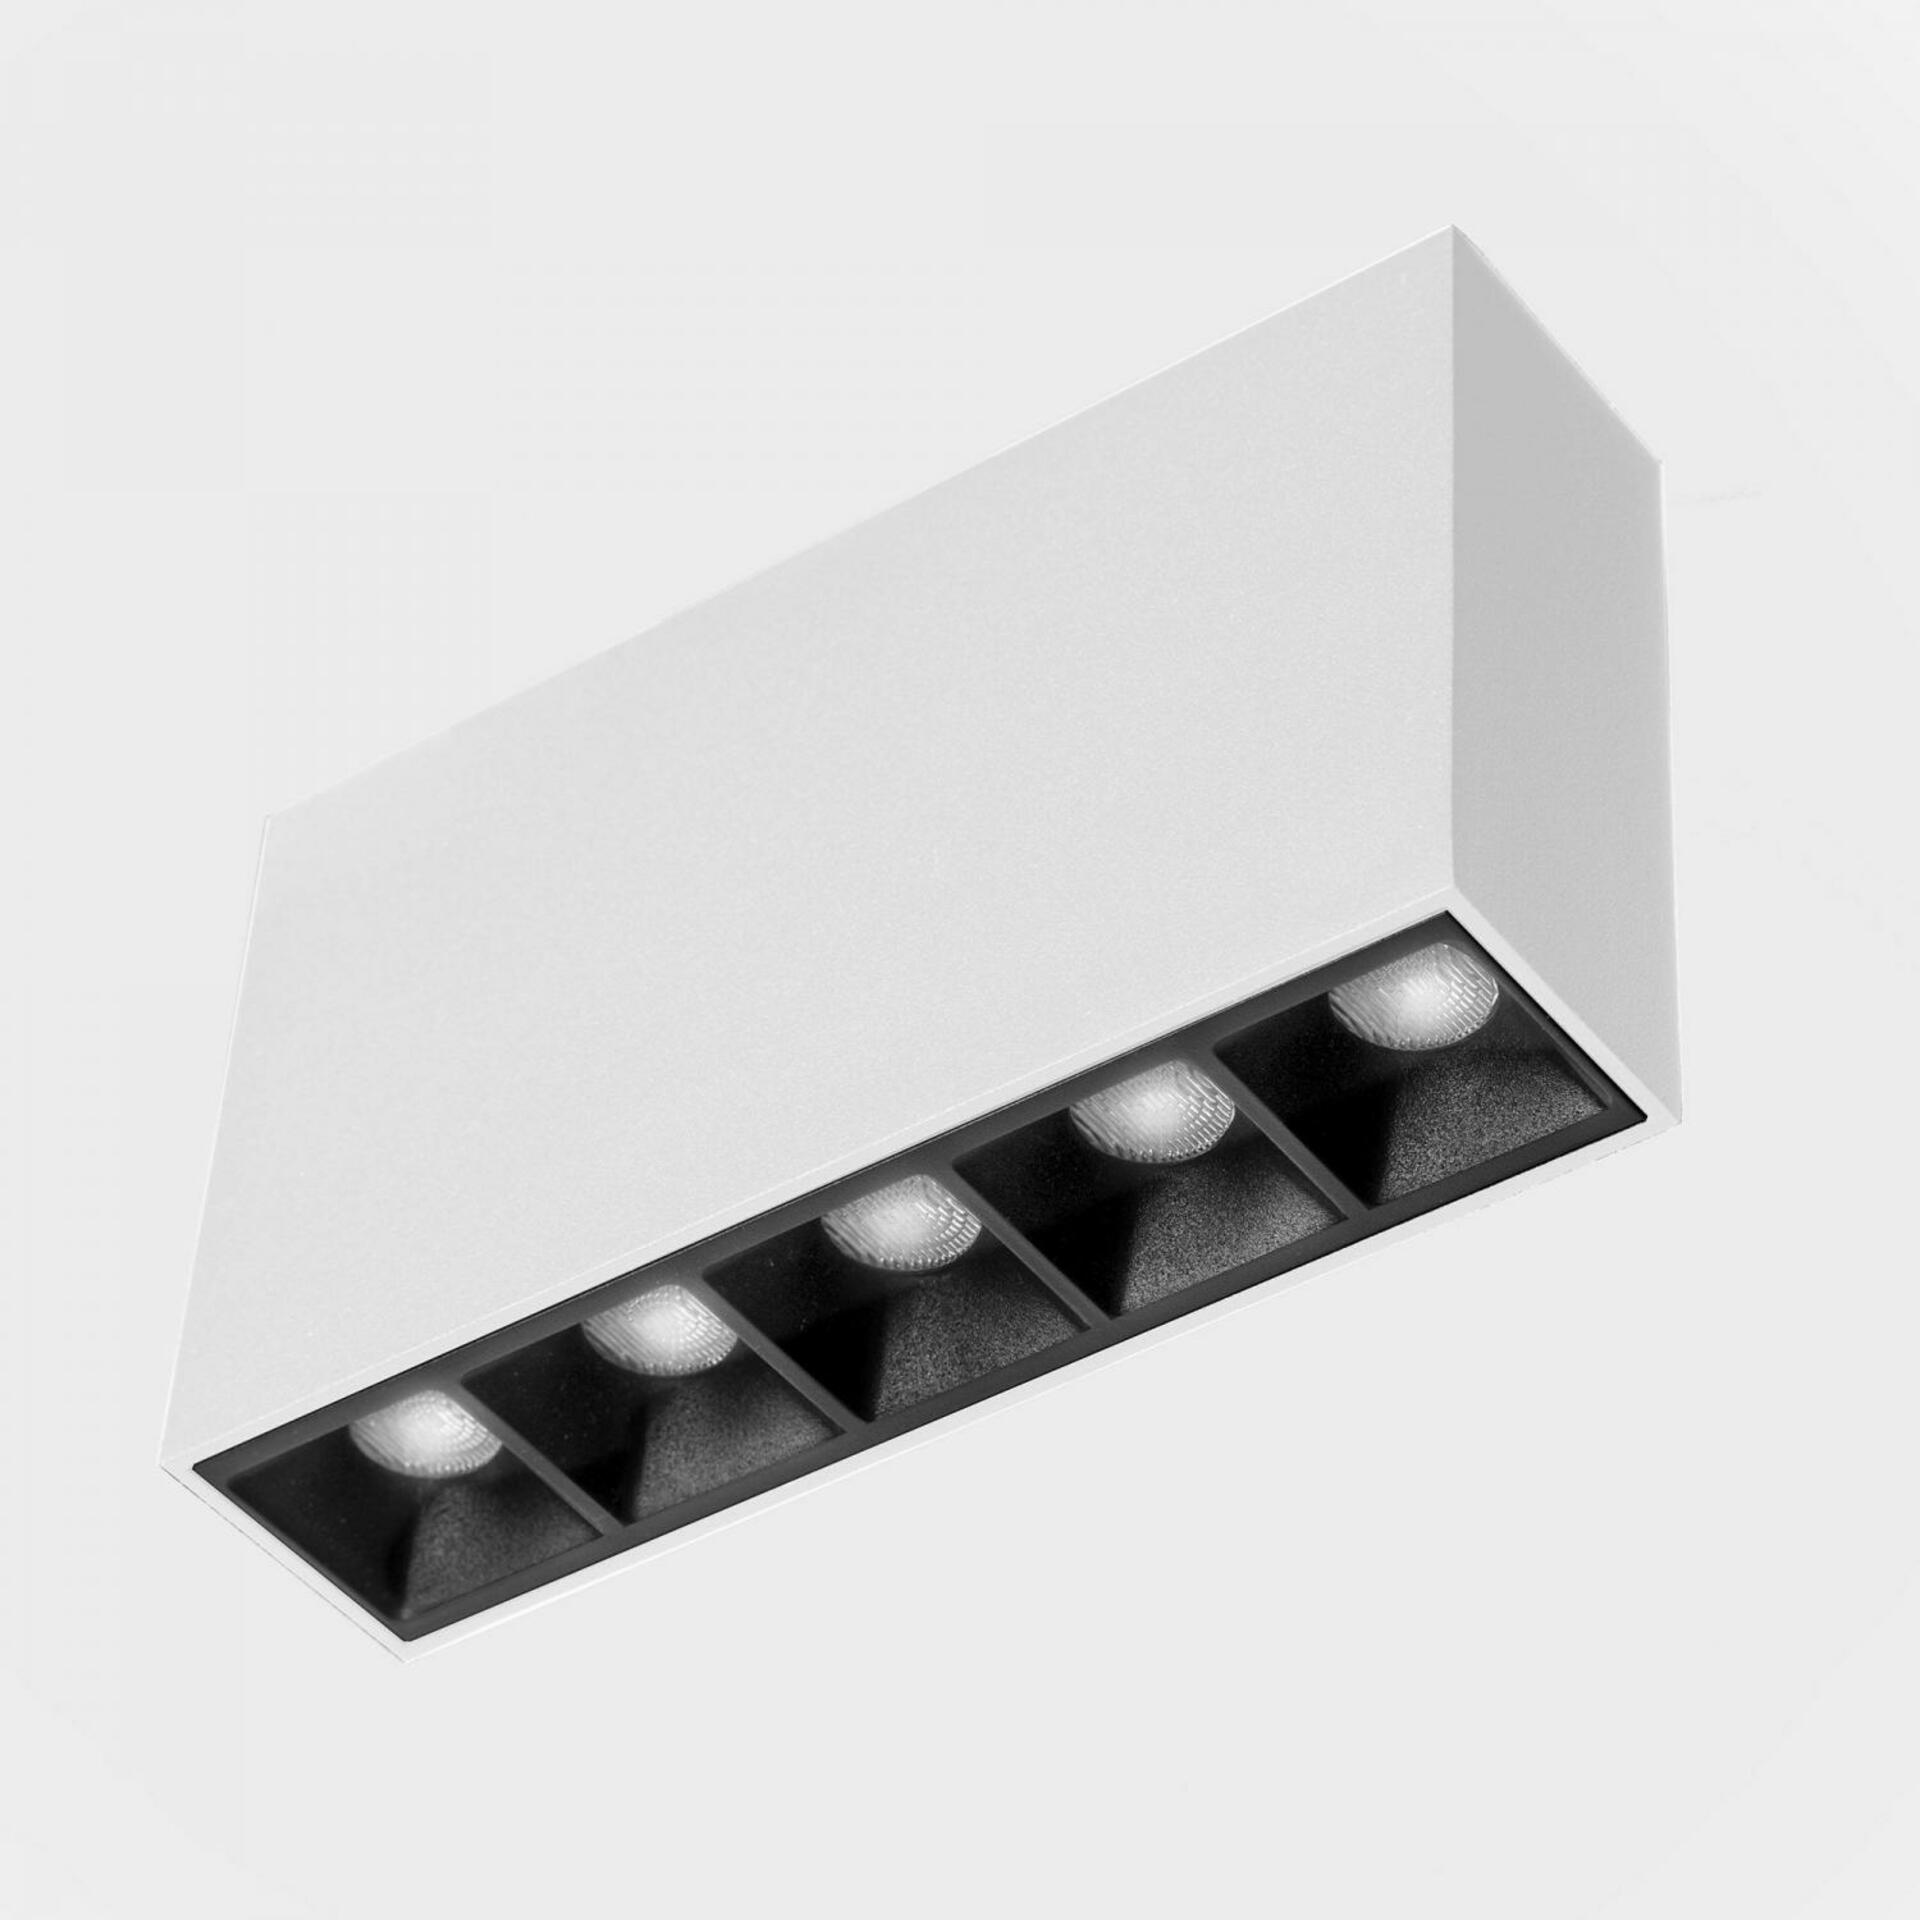 KOHL LIGHTING KOHL-Lighting NSES stropní svítidlo 137x35 mm bílá-černá 10 W CRI 90 4000K Non-Dimm